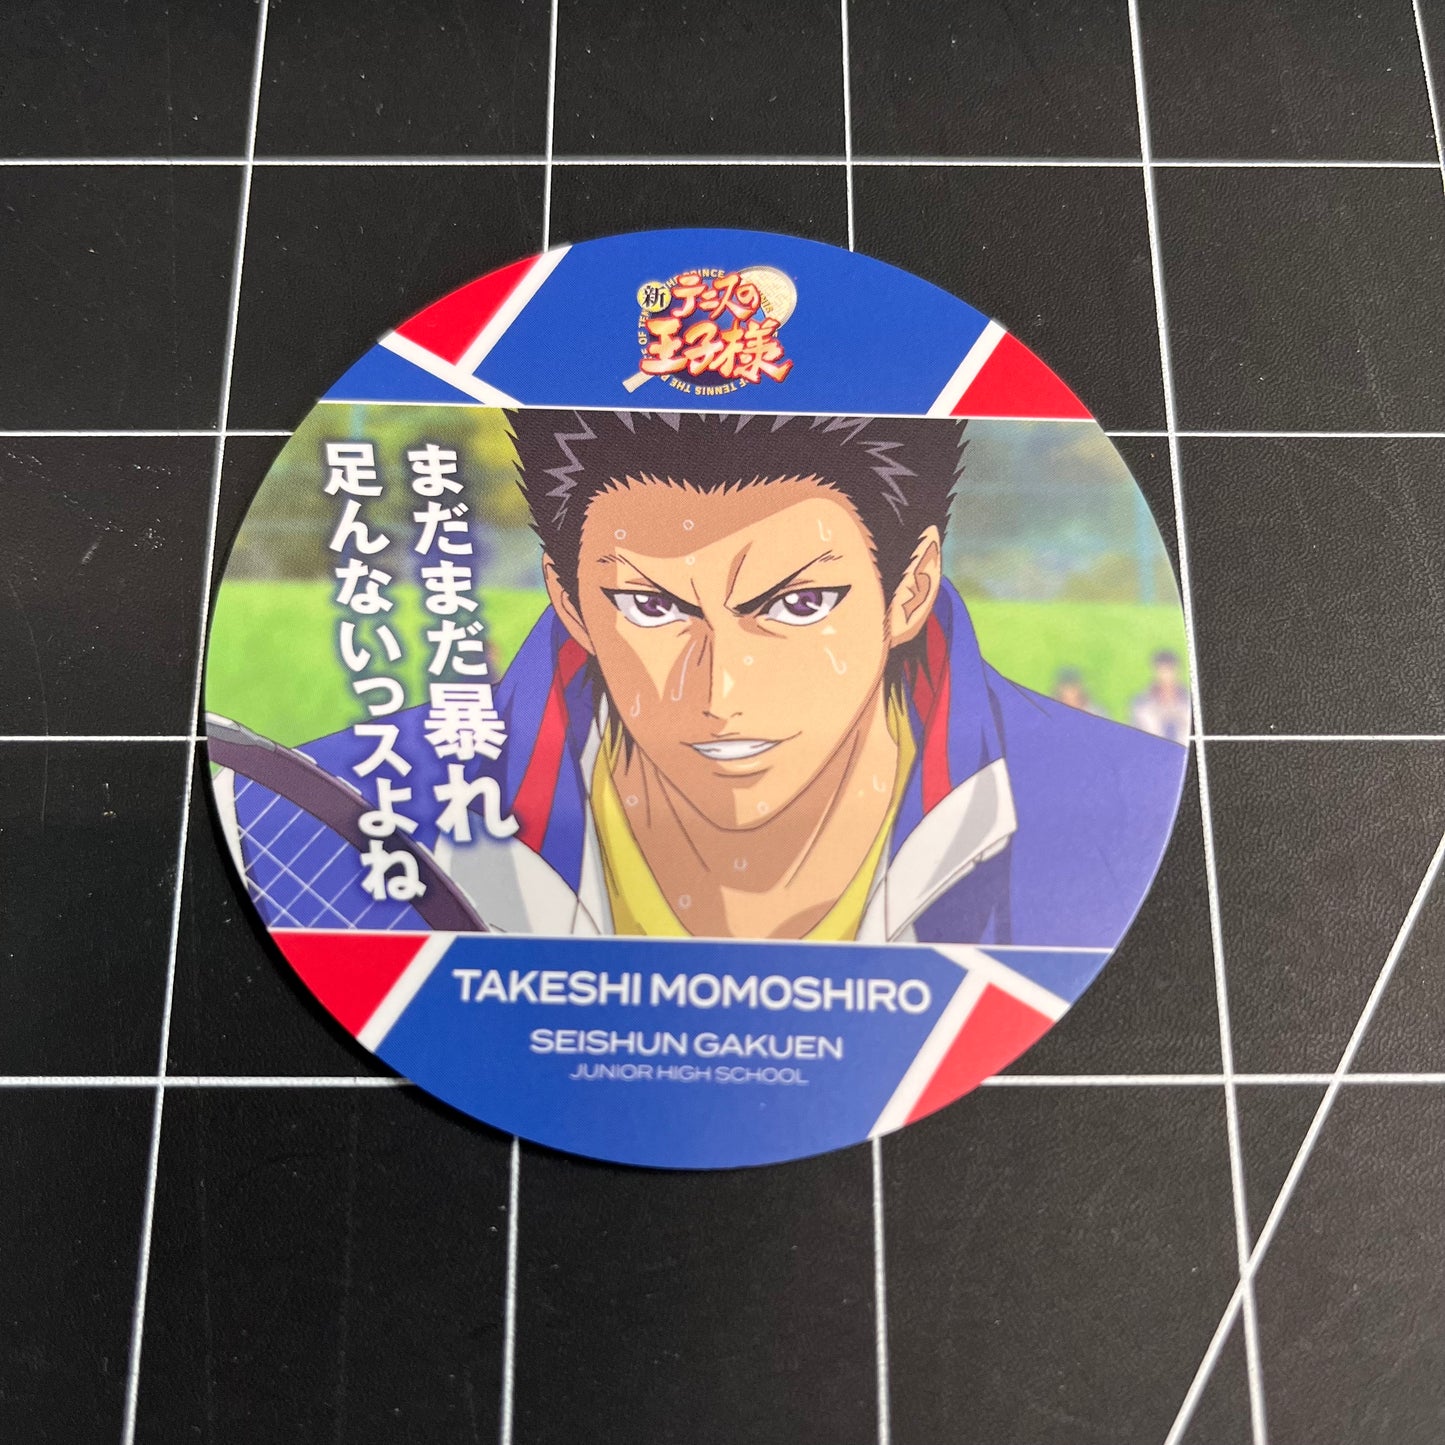 The Prince of Tennis Takeshi Momoshiro Seishun Gakuen Small Coaster